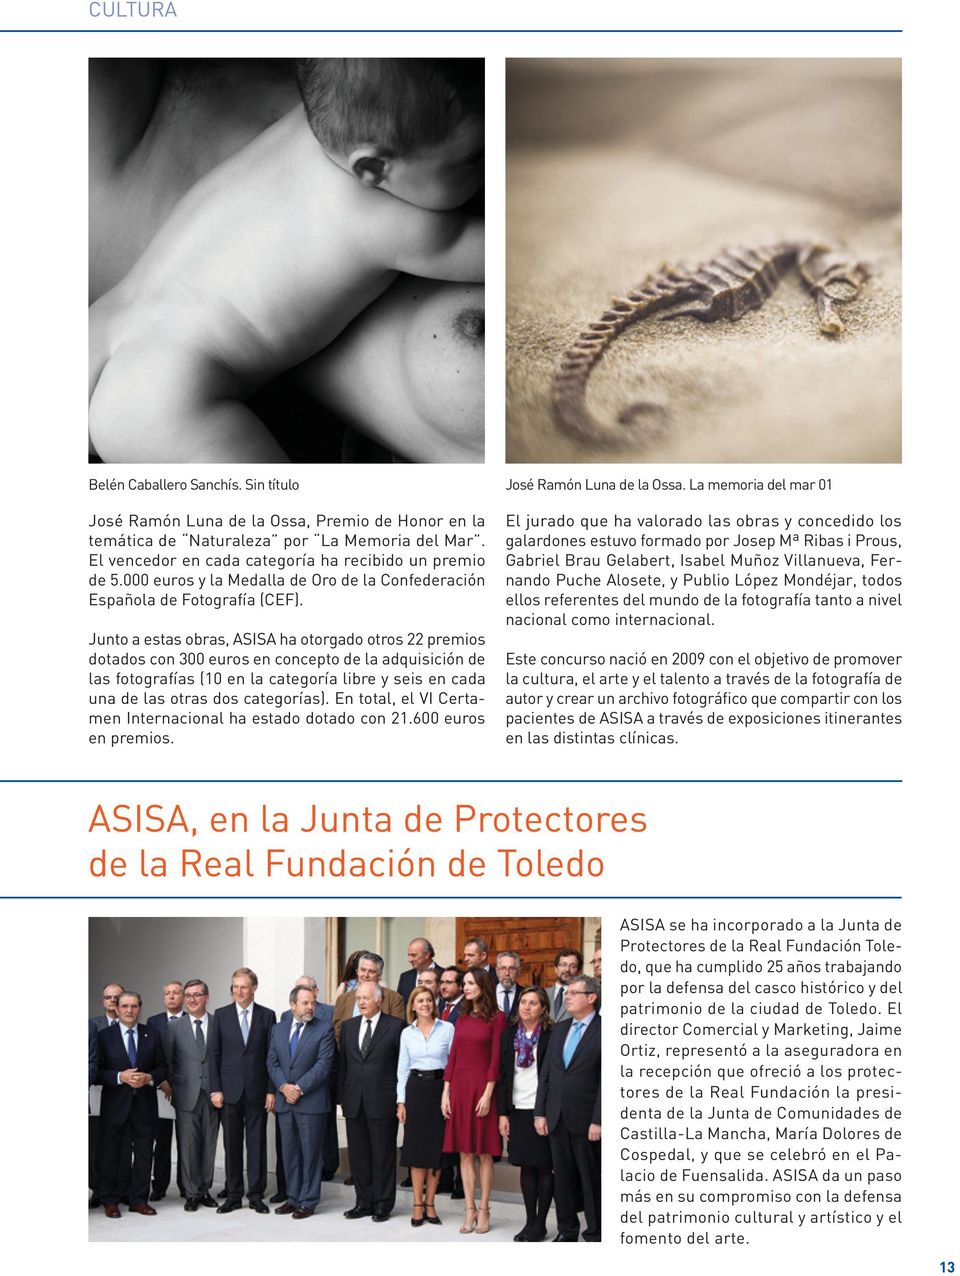 Junto a estas obras, ASISA ha otorgado otros 22 premios dotados con 300 euros en concepto de la adquisición de las fotografías (10 en la categoría libre y seis en cada una de las otras dos